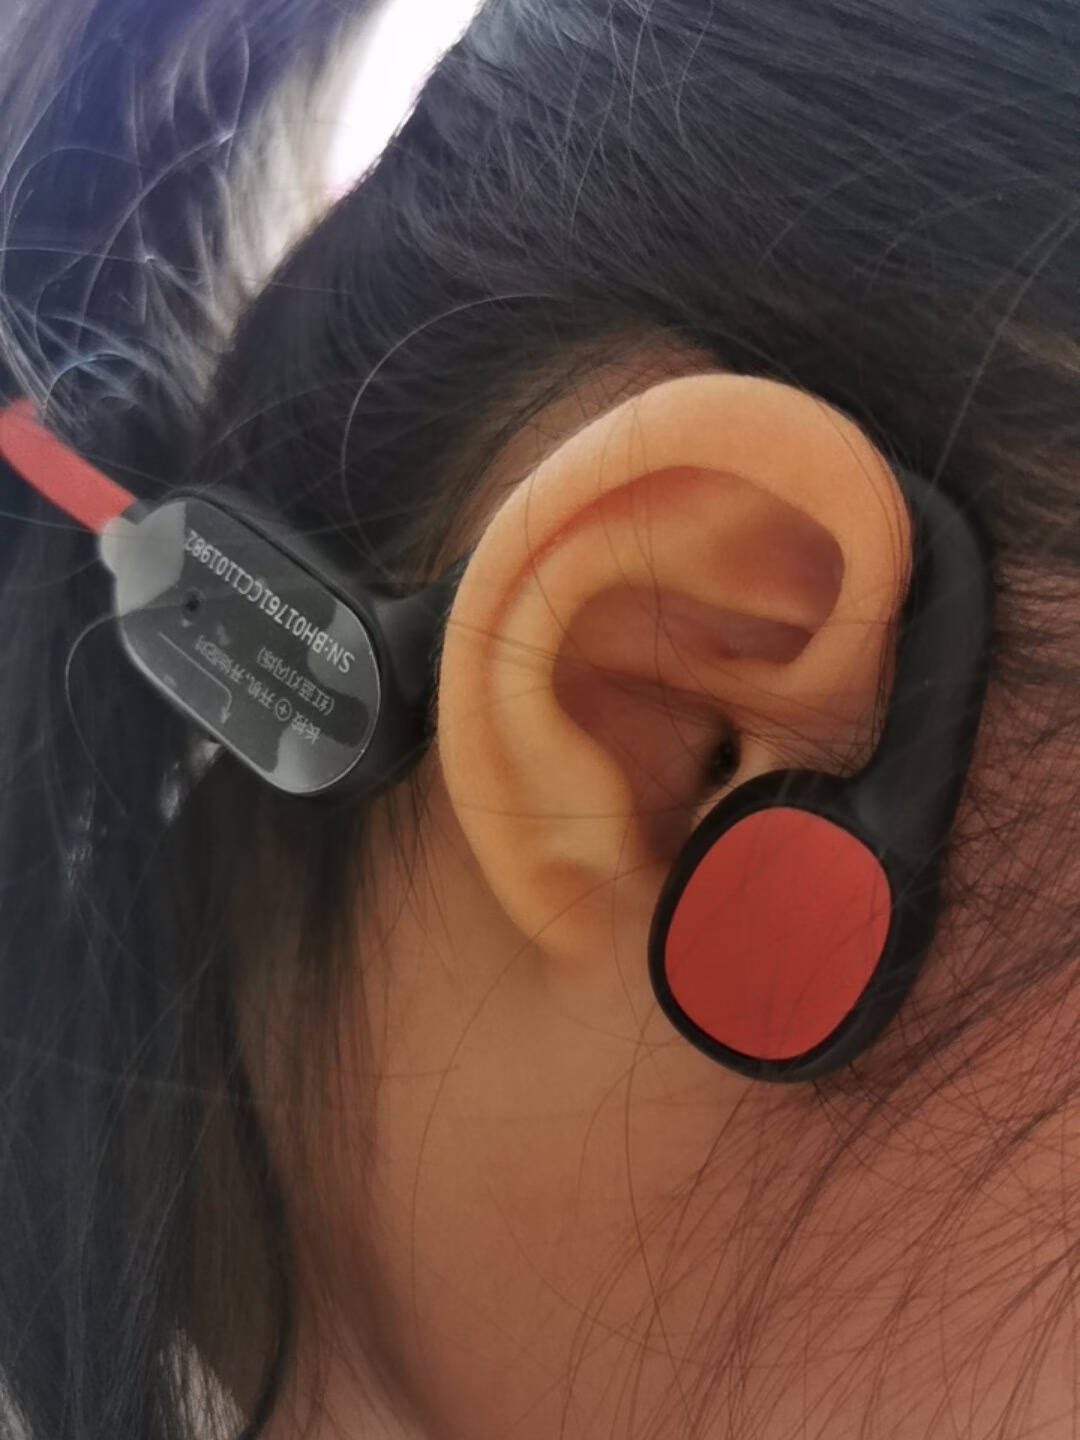 阿尔法蛋无线蓝牙耳机不入耳式挂耳式听歌运动跑步室内学习耳麦学生耳机儿童耳机樱桃红